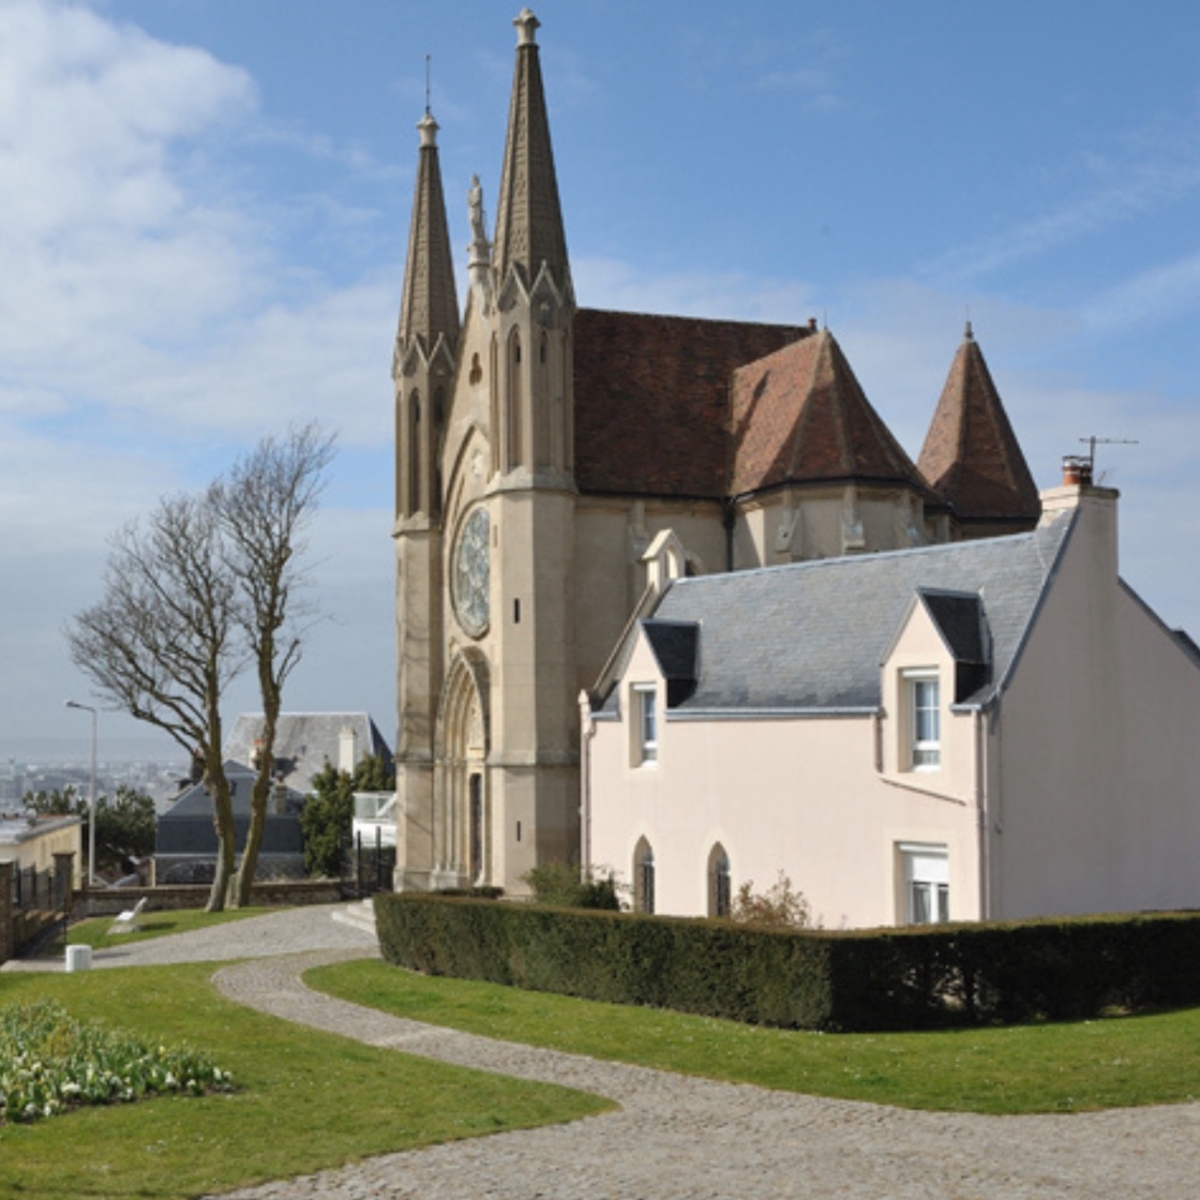 Chapelle Notre-Dame des Flots in SAINTE-ADRESSE, Normandie, France